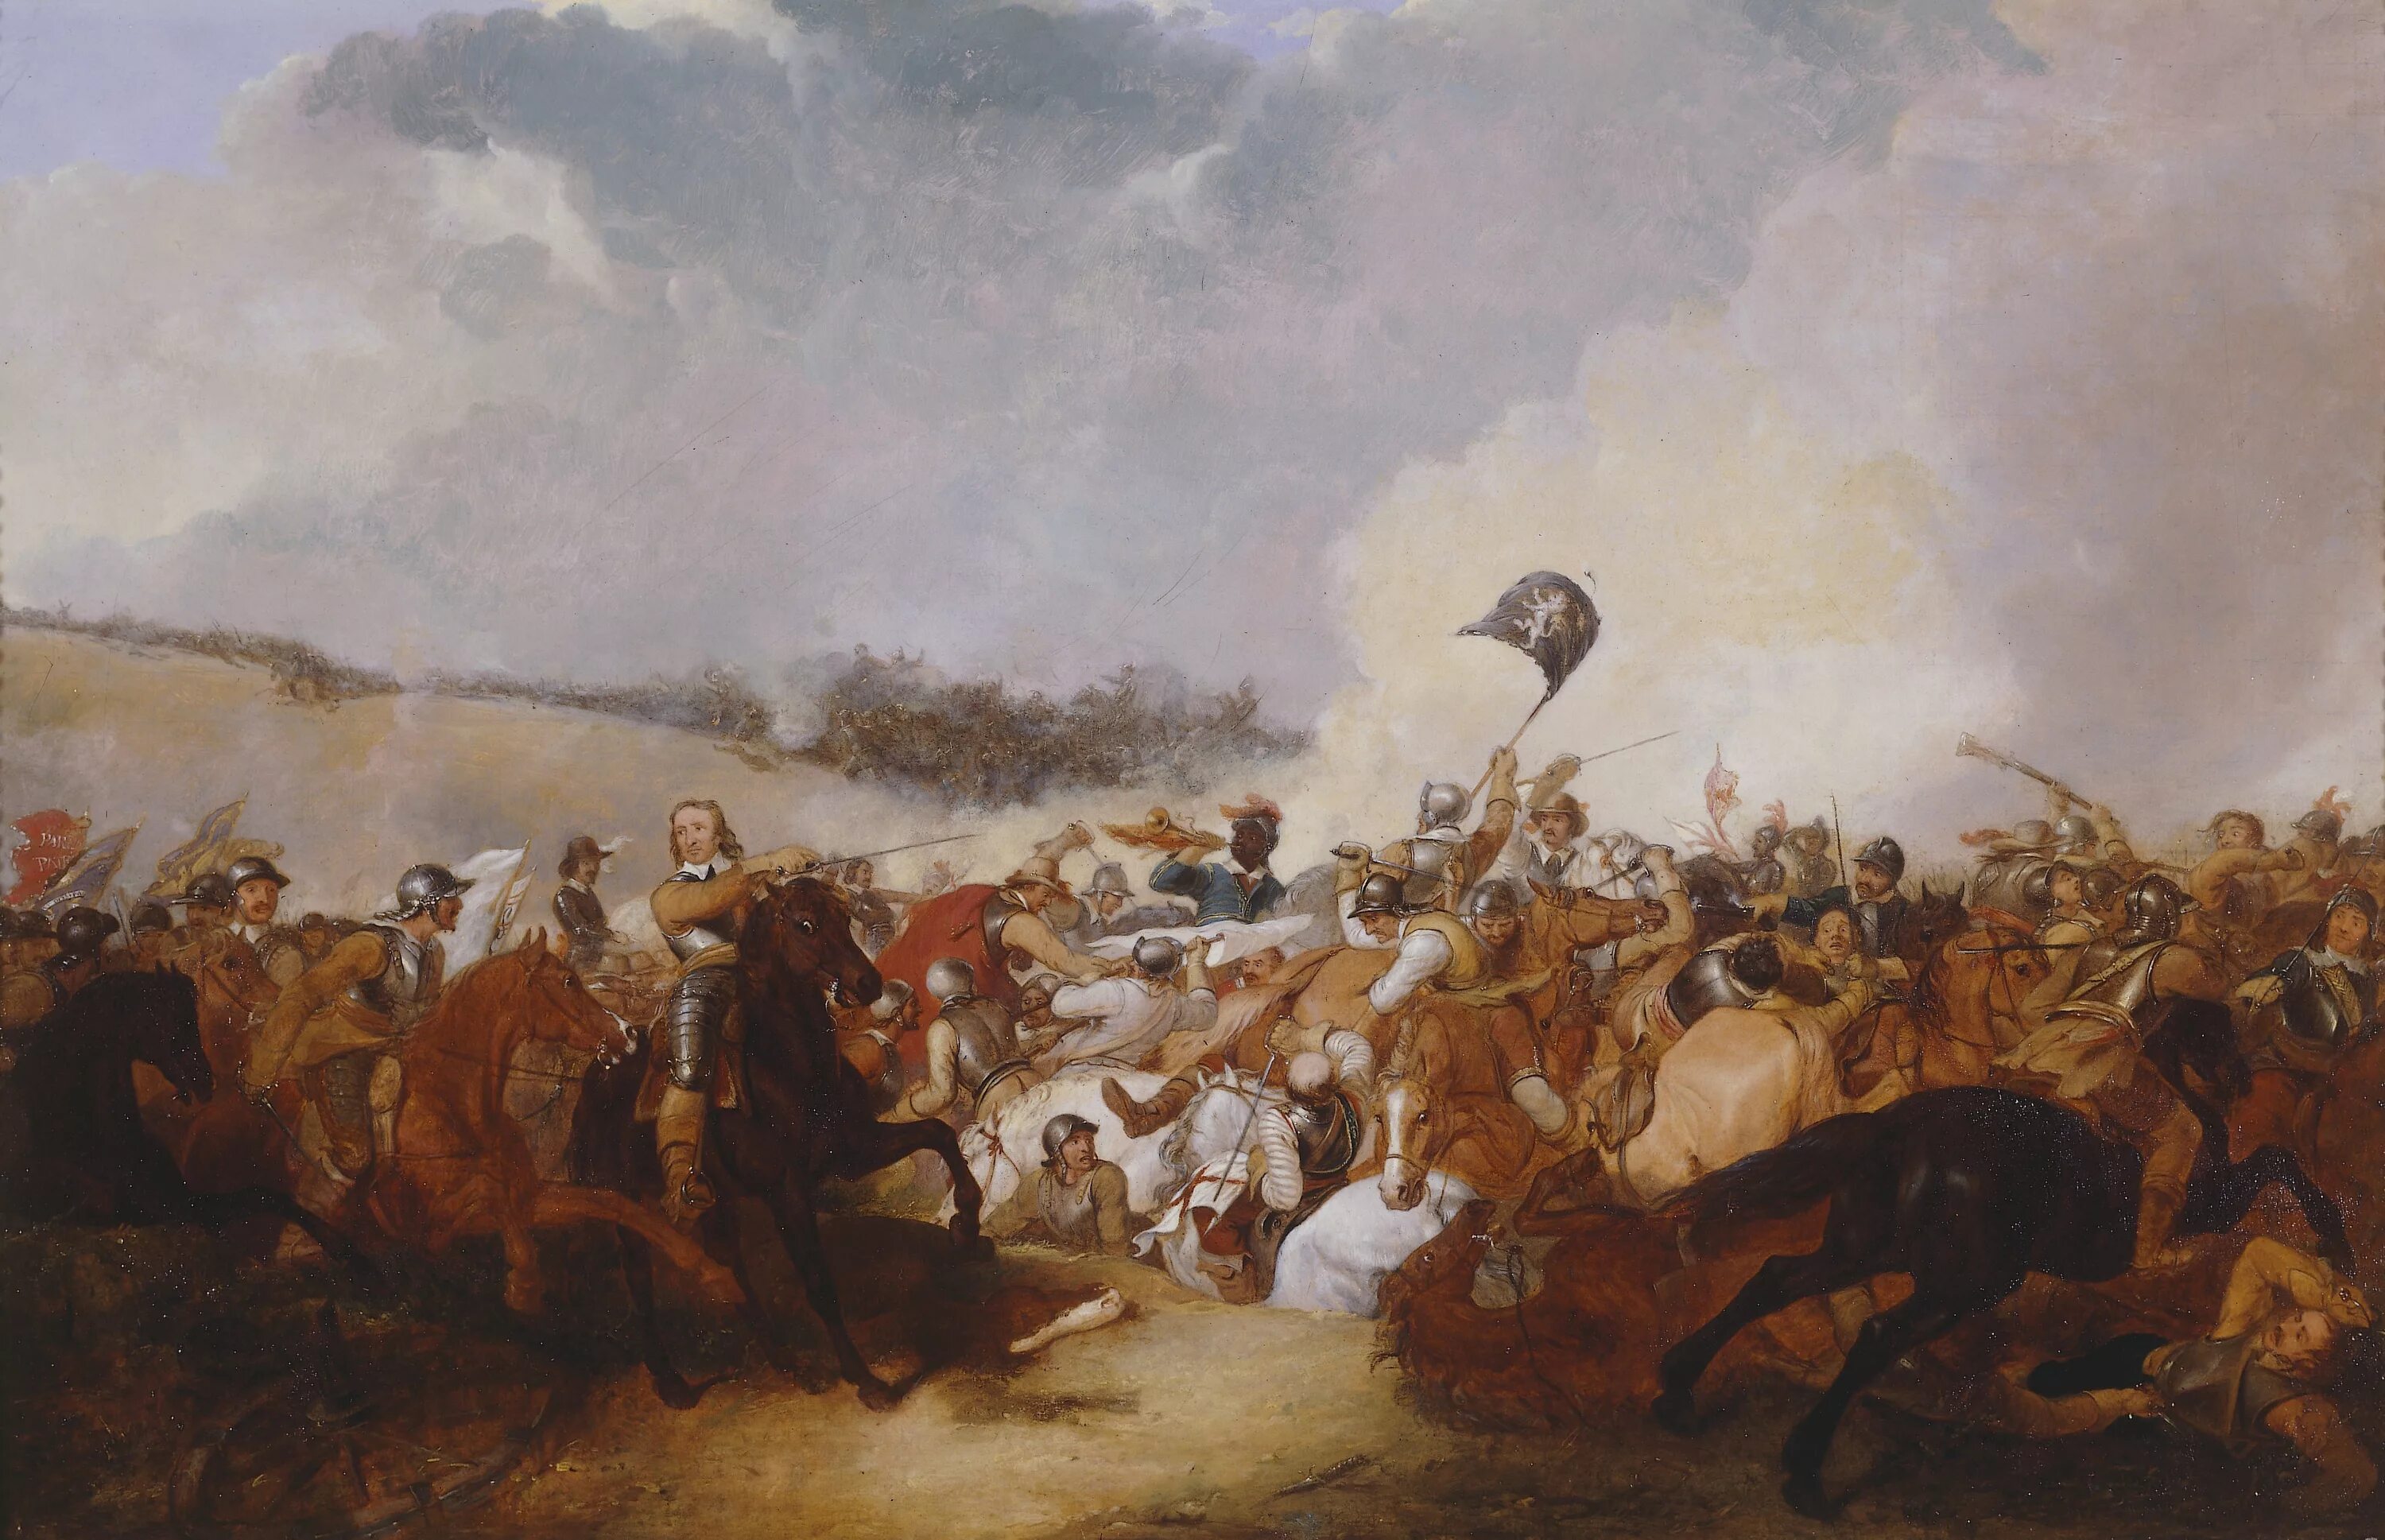 Первая революция в англии. Оливер Кромвель битва при Нейзби. Оливер Кромвель битва при Данбаре. Оливер Кромвель в битве при Марстон-Муре. Сражение при Нейзби в Англии 1645.